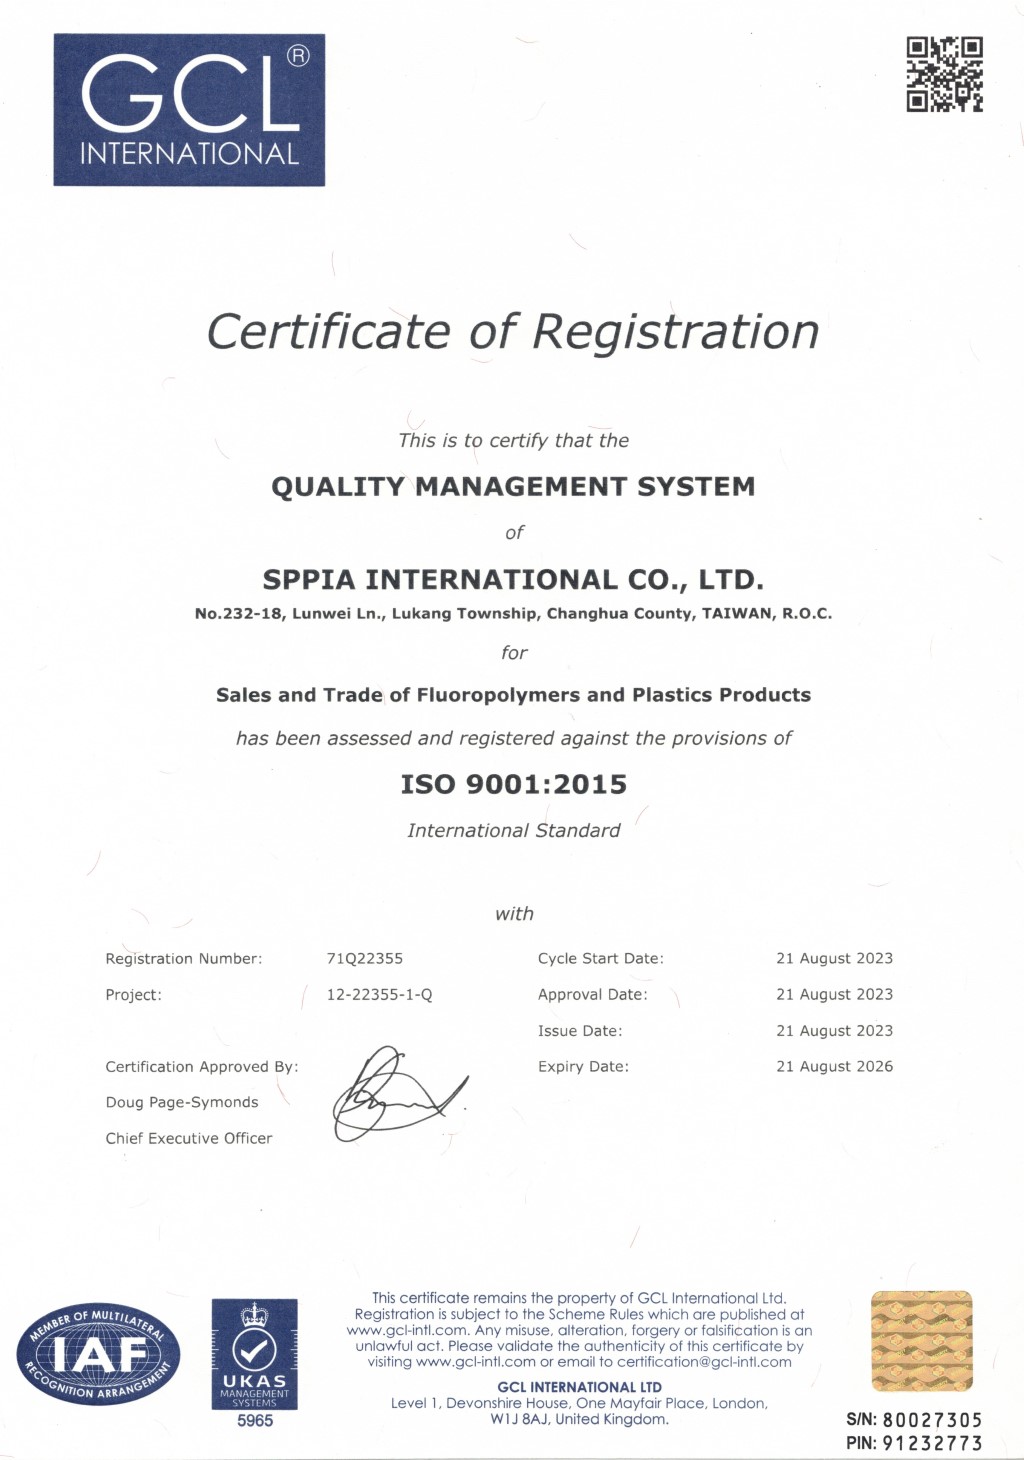 鈞益-ISO9001:2015 品質管理系統驗證